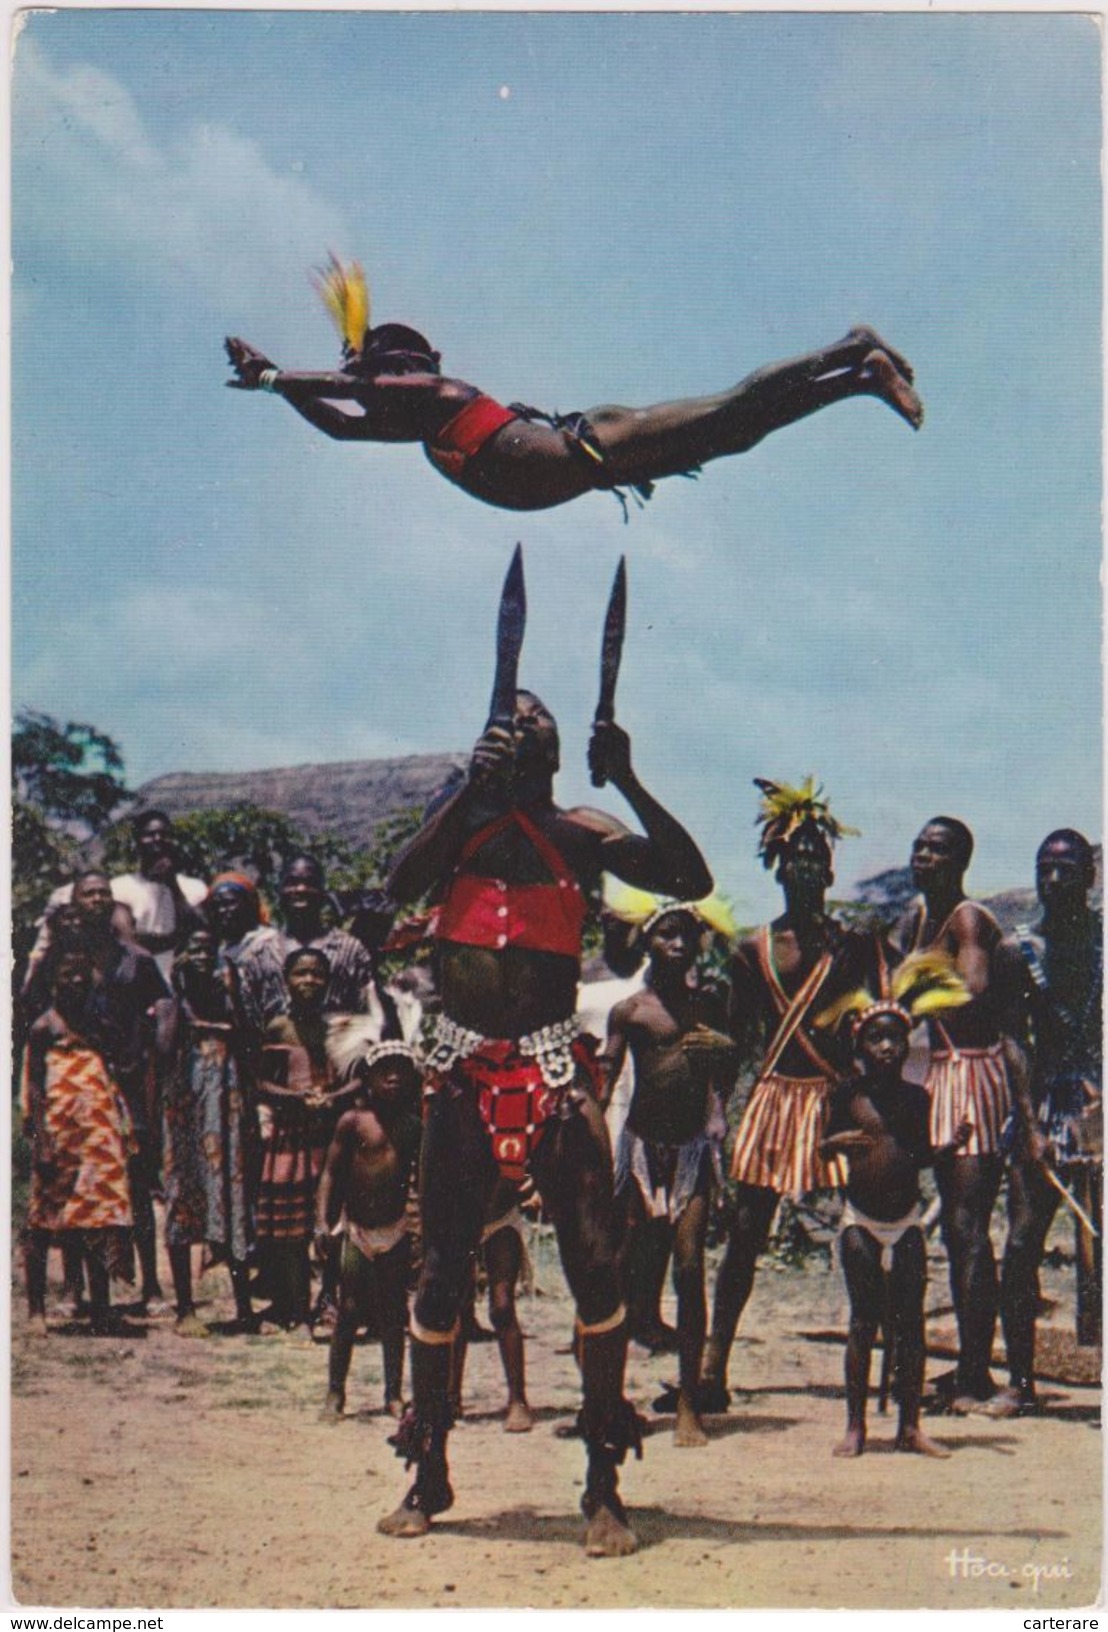 AFRIQUE,TOGO,DANSE DES COUTEAUX,artiste Noir,enfant Voltigeur à Plume,prise De Risque Important,édition HOA-QUI - Togo